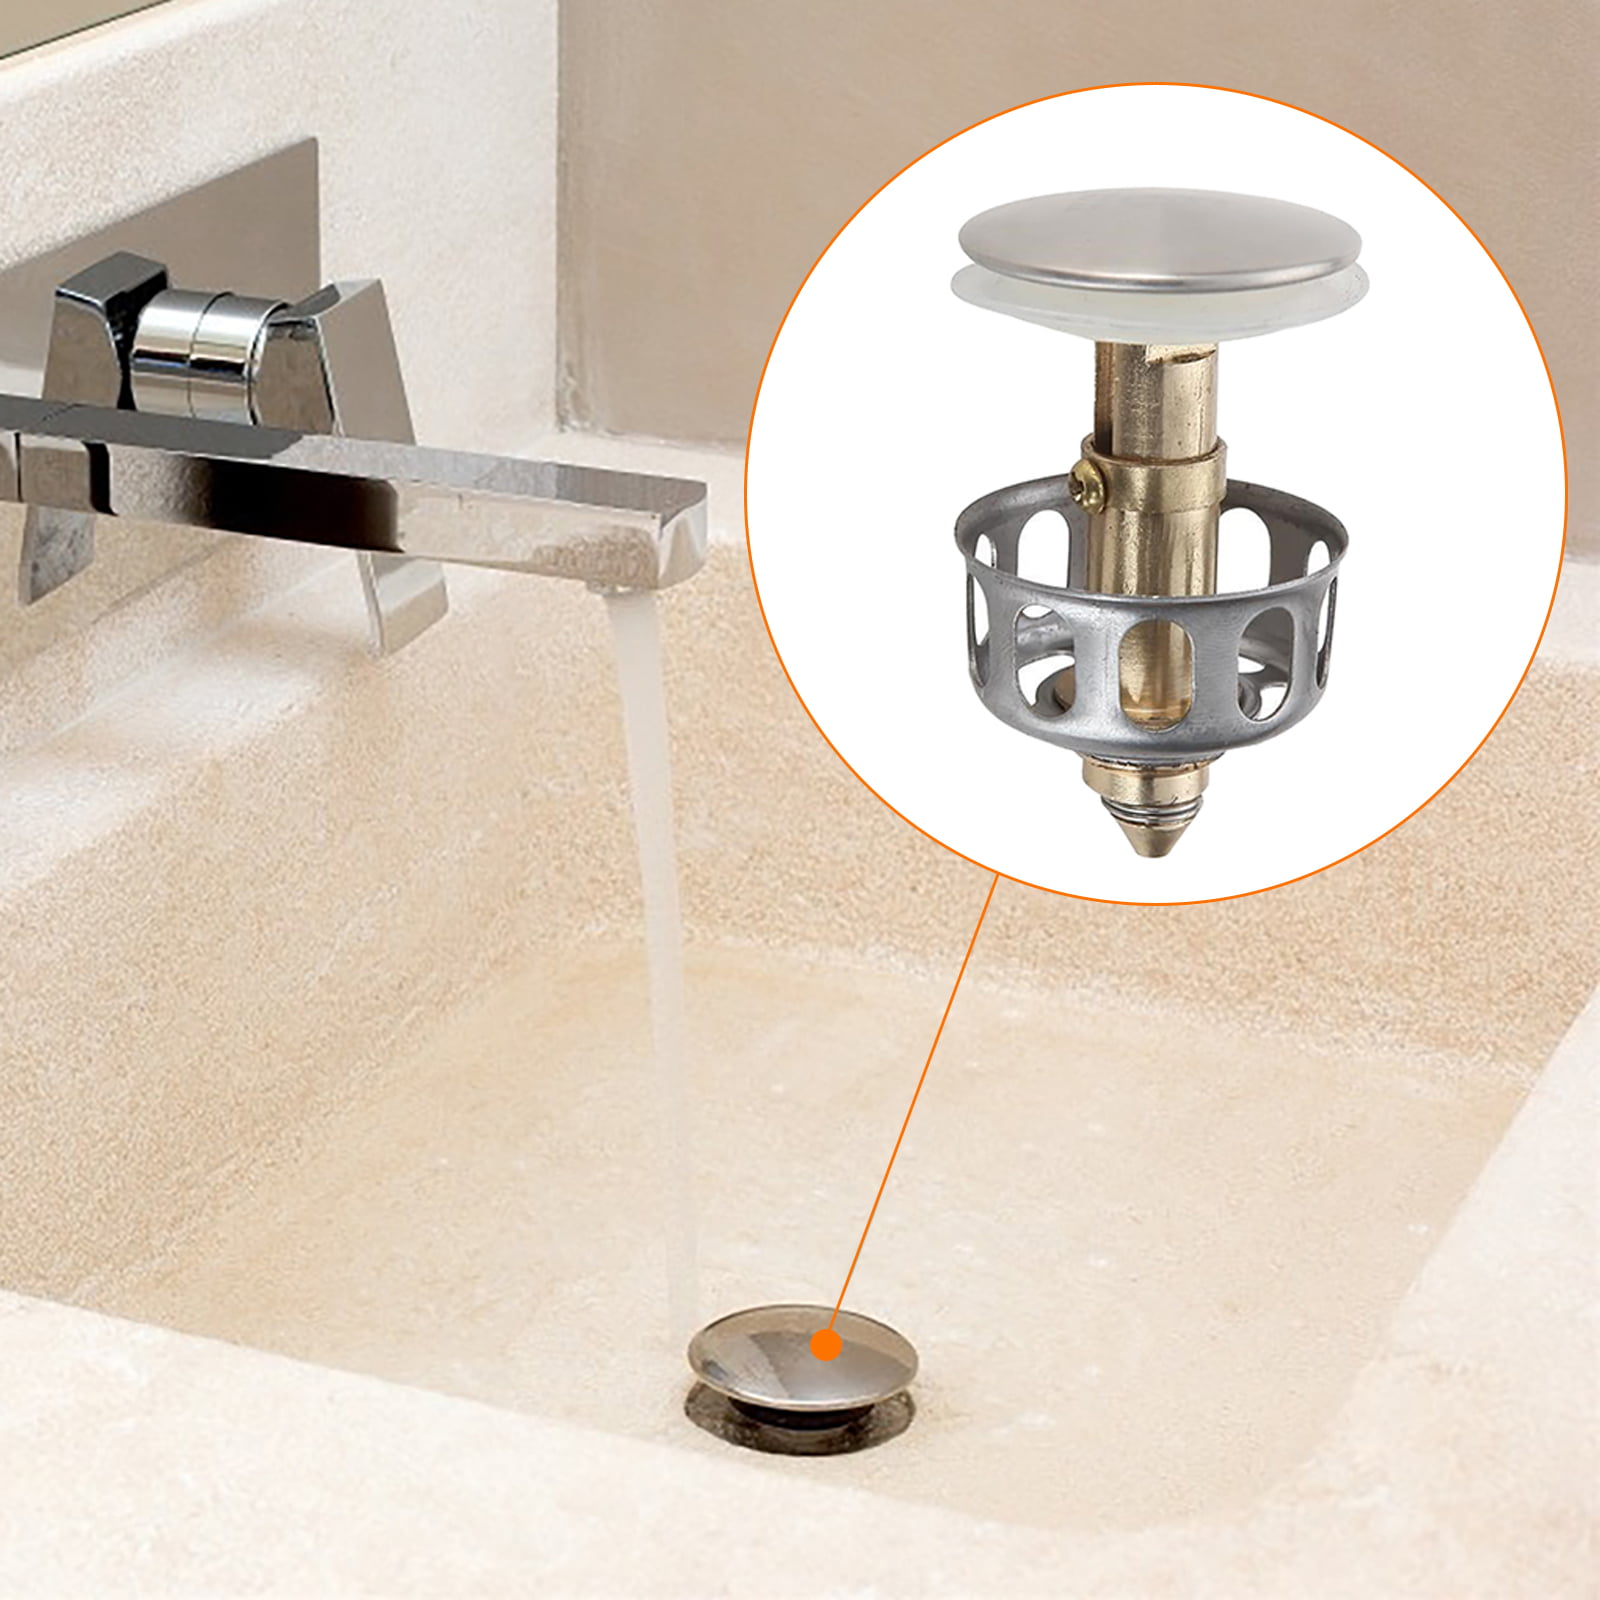 Universal Wash Basin Bounce Drain Filter